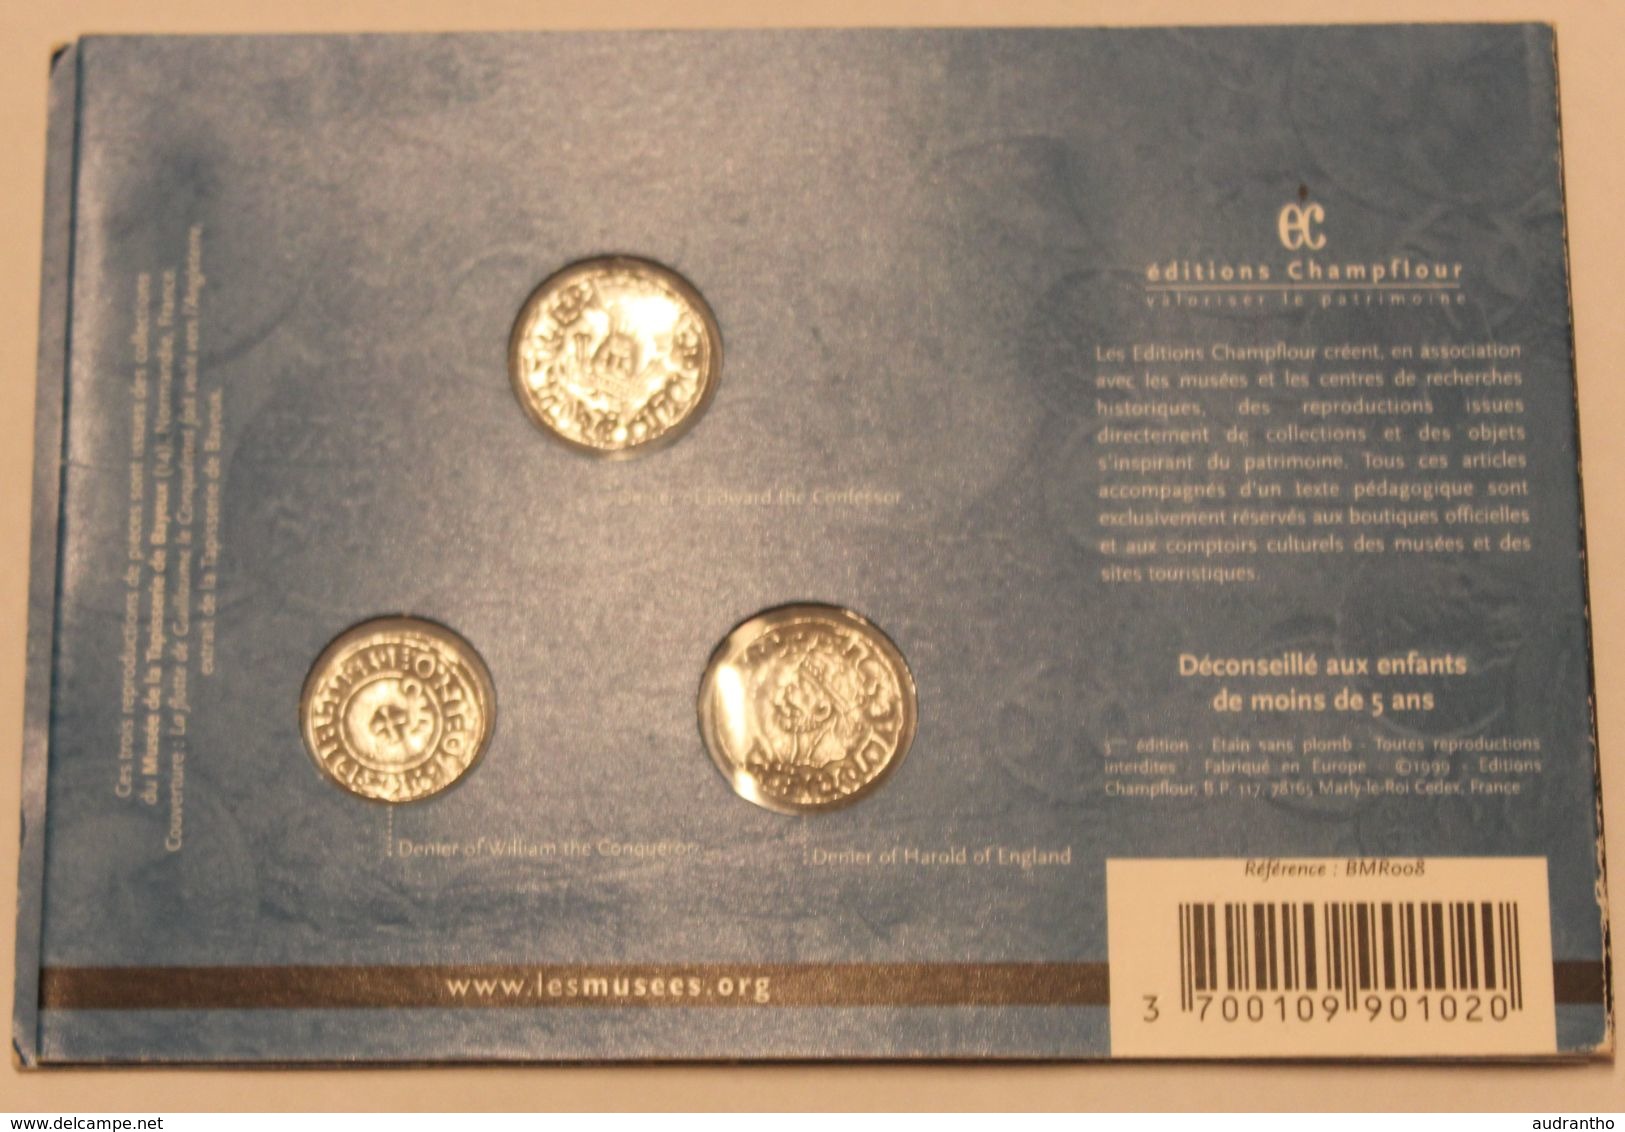 Plaque Reproduction De 3 Monnaies Médiévales Collection Art Et Patrimoine Moyen-âge N°2 éditions Champflour 1999 - Imitationen, Nachahmungen